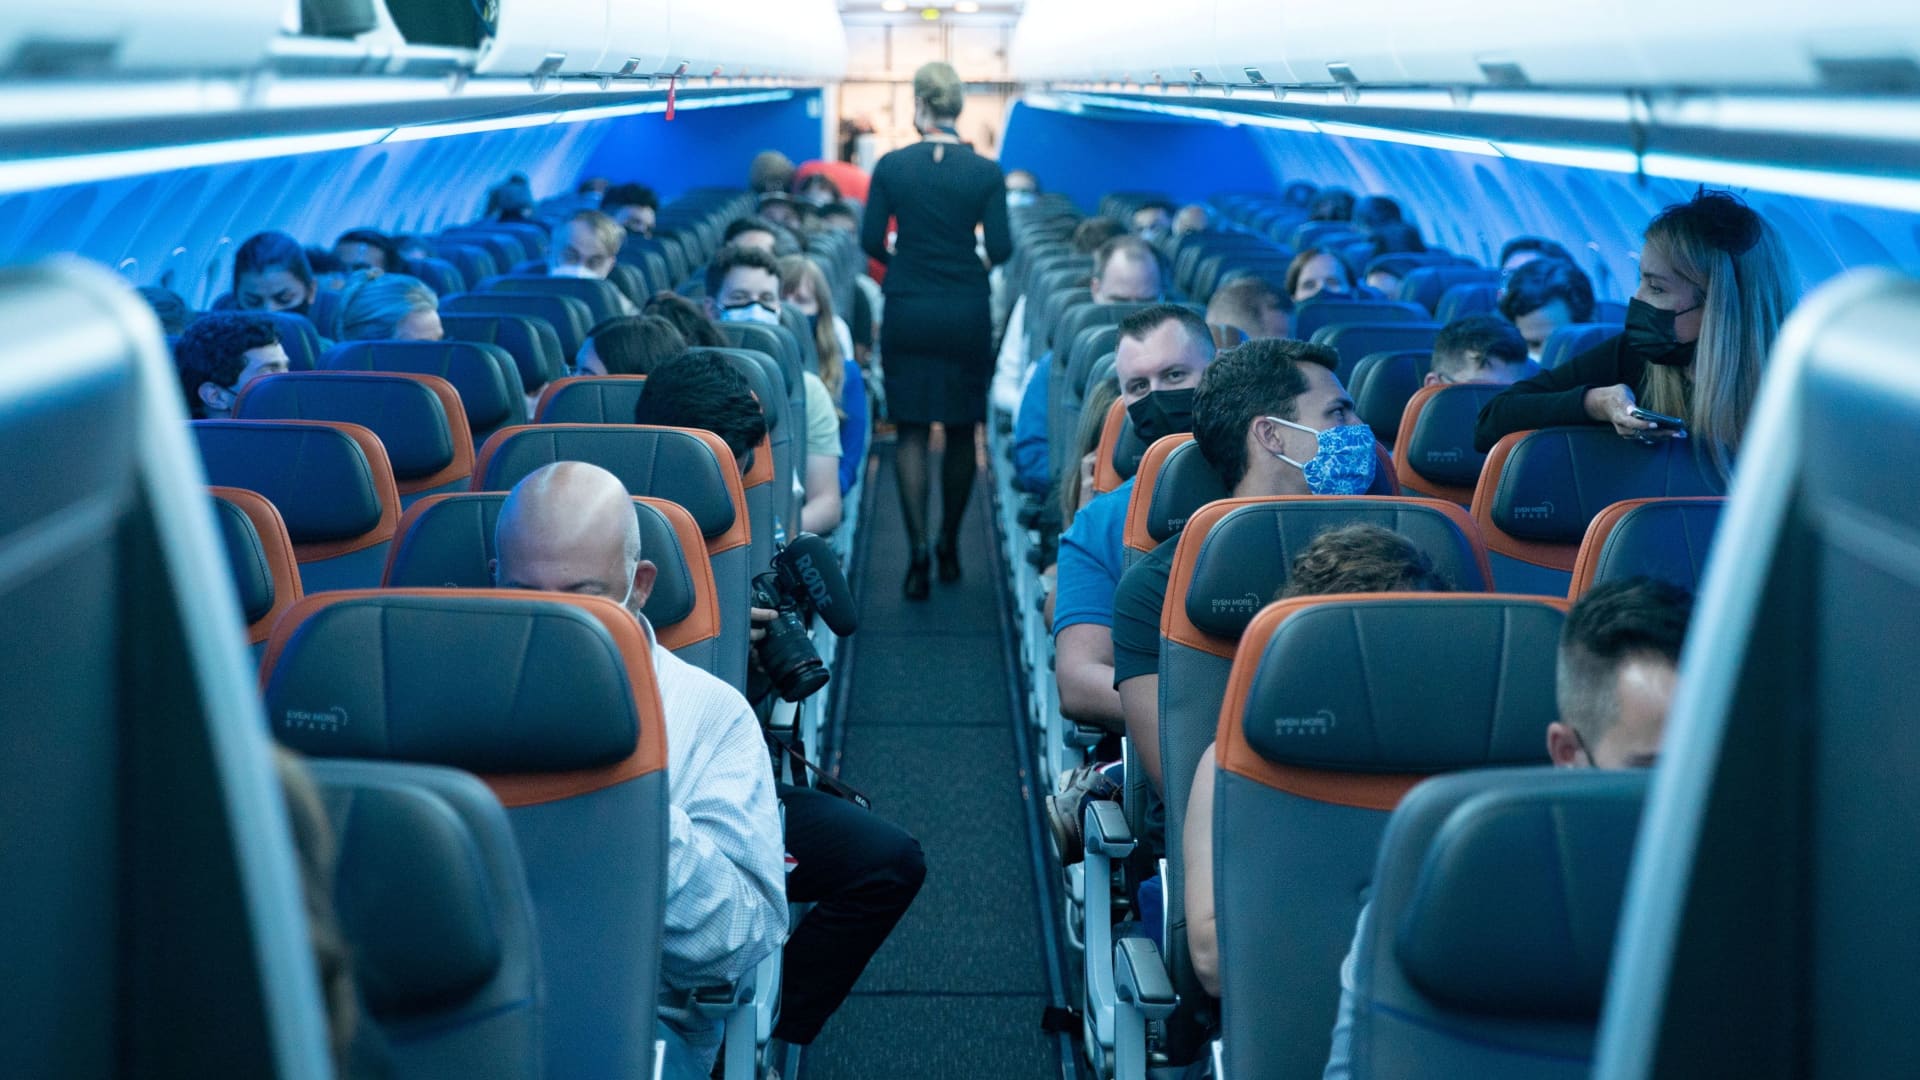 बिडेन प्रशासन ने कांग्रेस से आग्रह किया कि एयरलाइनों द्वारा परिवारों को एक साथ बैठने के लिए चार्ज करने पर प्रतिबंध लगाया जाए